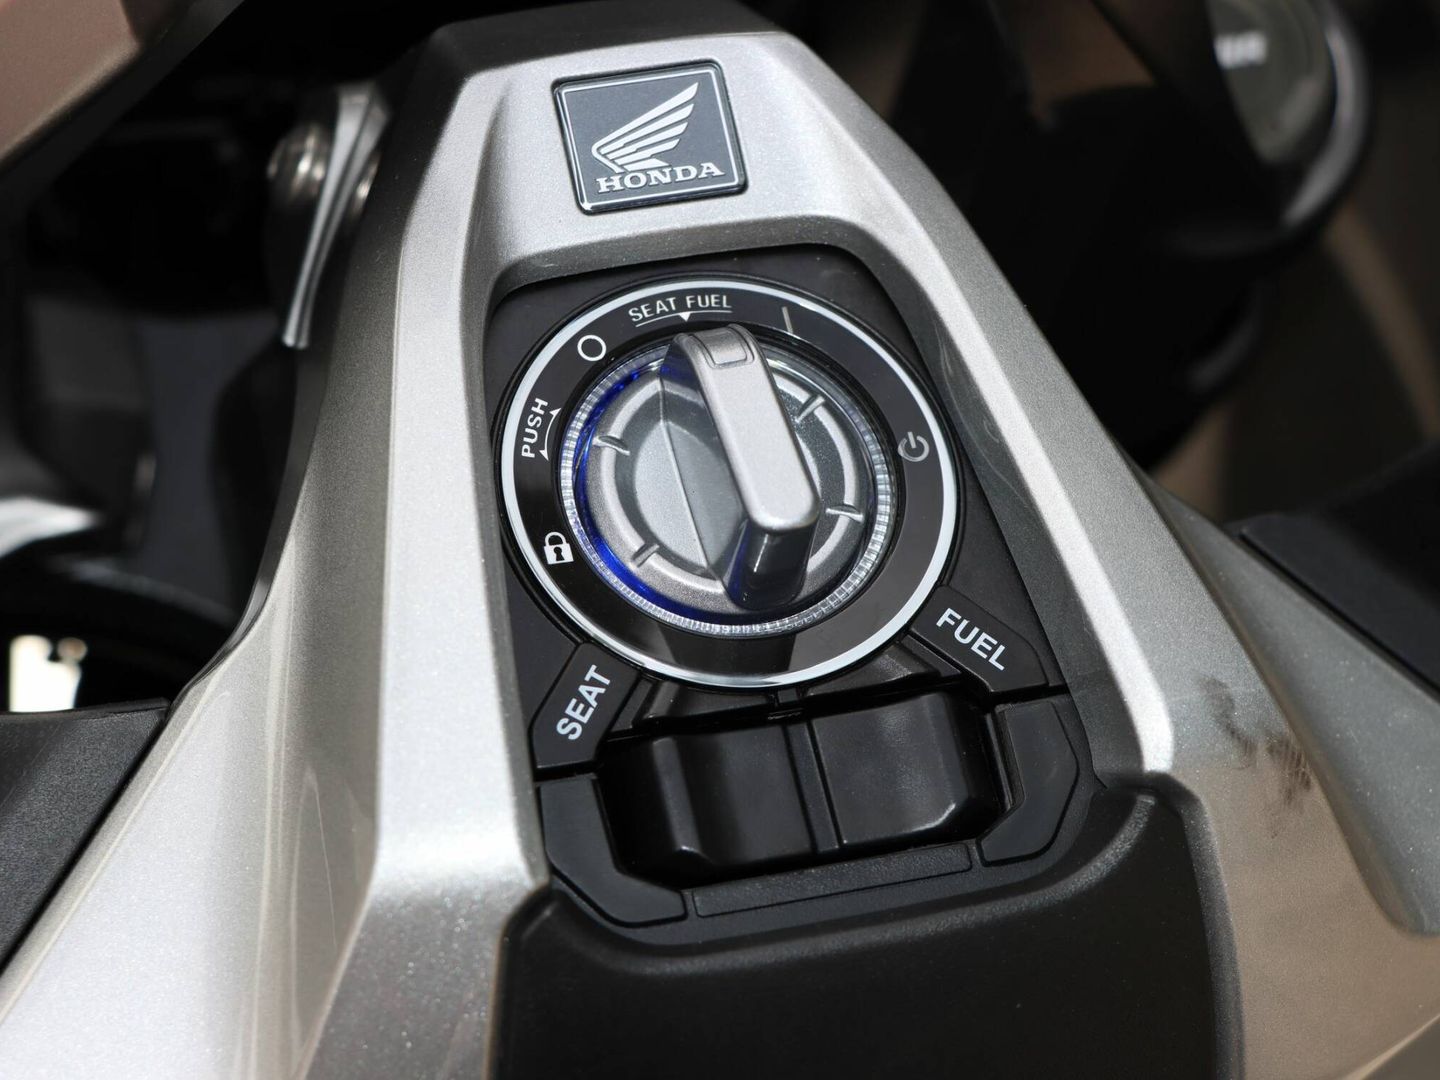 La consola central permite conectar y desconectar la moto, con el sistema Key Smart, y abrir depósito y asiento.